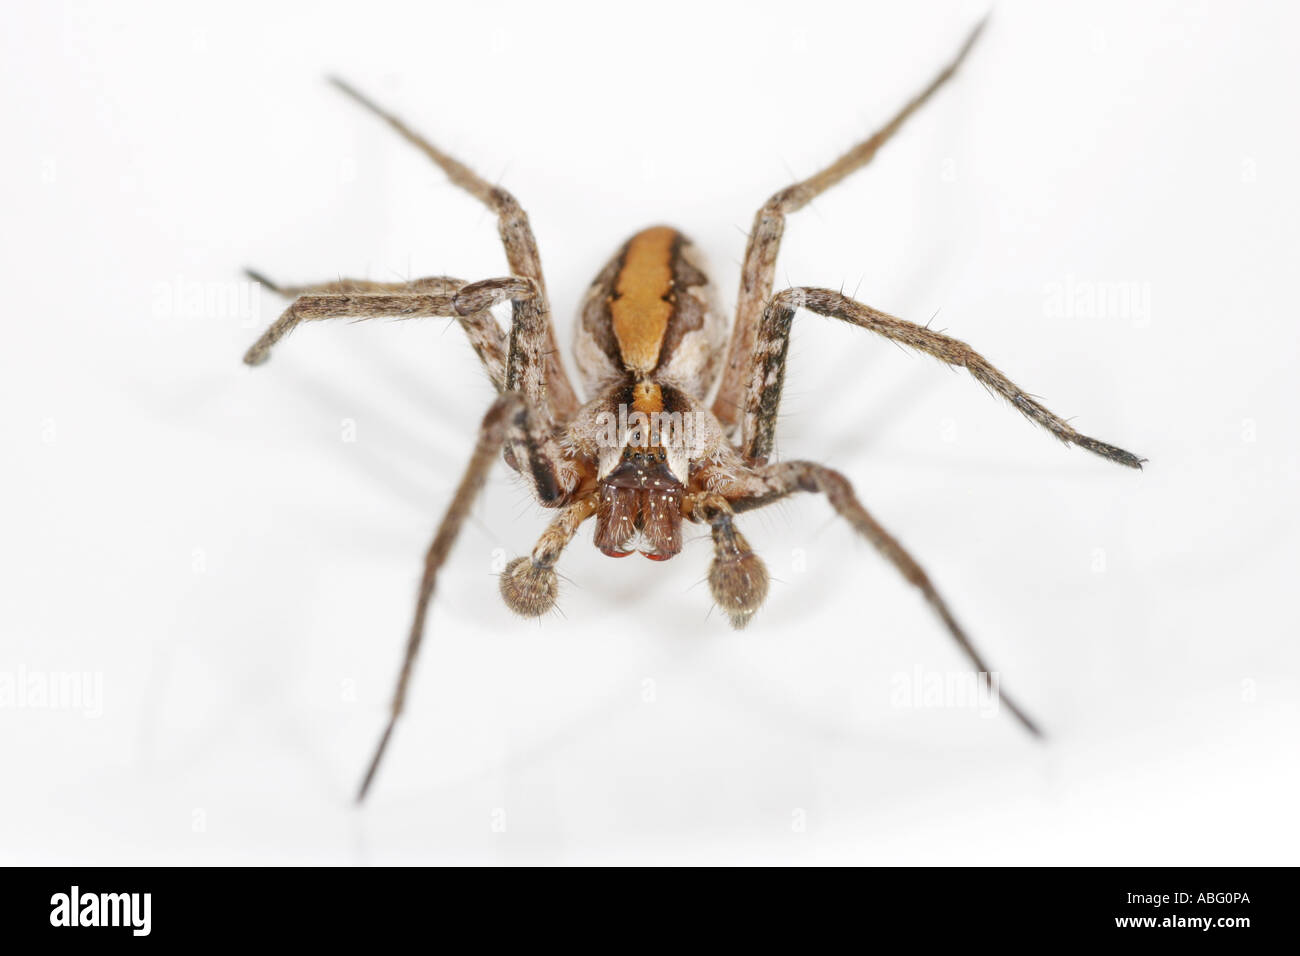 Pisaura Mirabilis genannt auch die Baumschule Web Spider. Eine Jagd Spinne auf weißem Hintergrund. Fahren auf Sicht Stockfoto